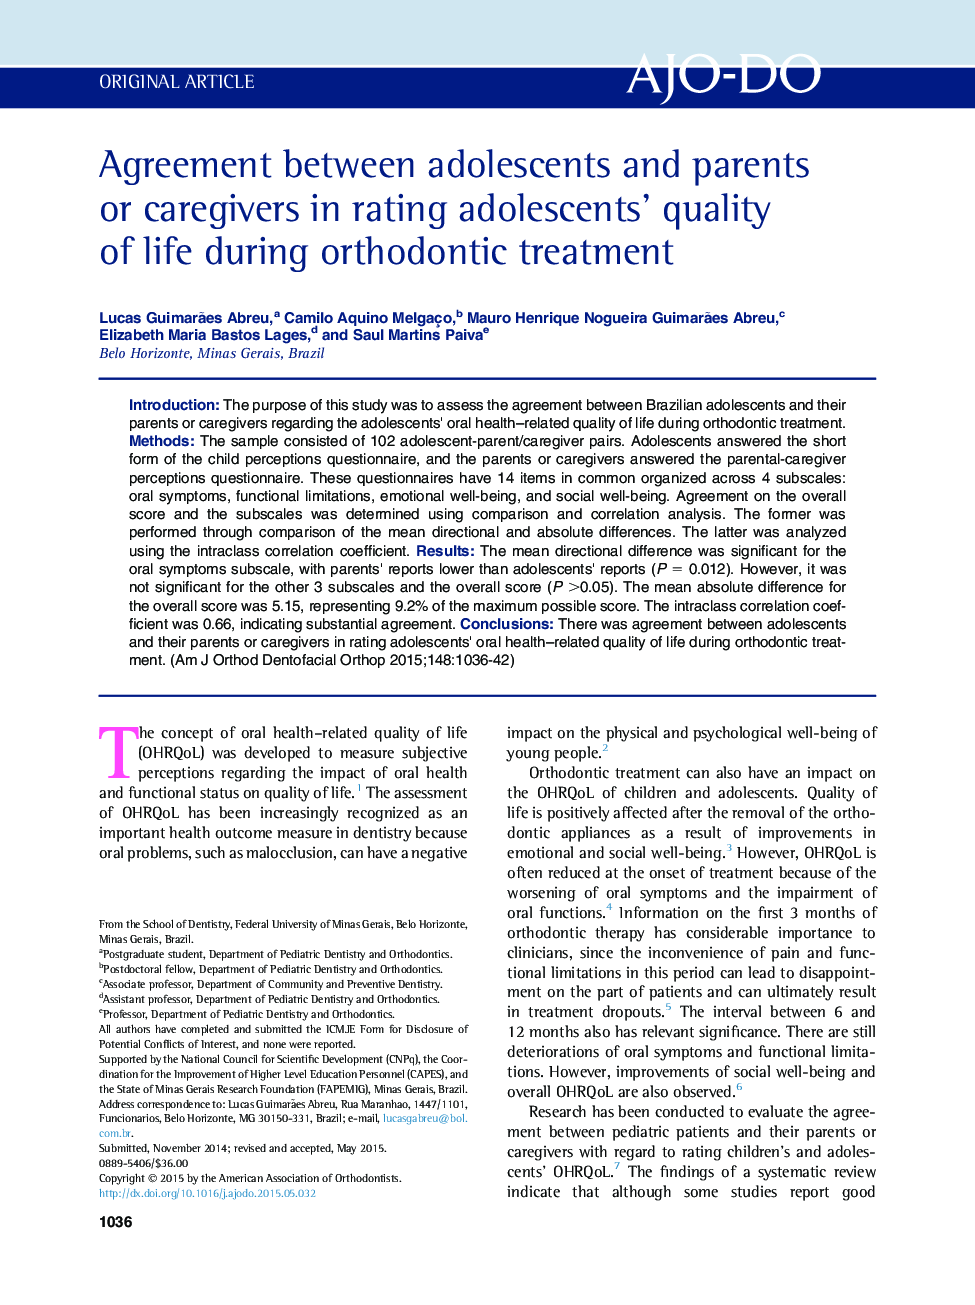 توافق بین نوجوانان و والدین یا مراقبین در کیفیت زندگی نوجوانان در طول درمان ارتودنسی 